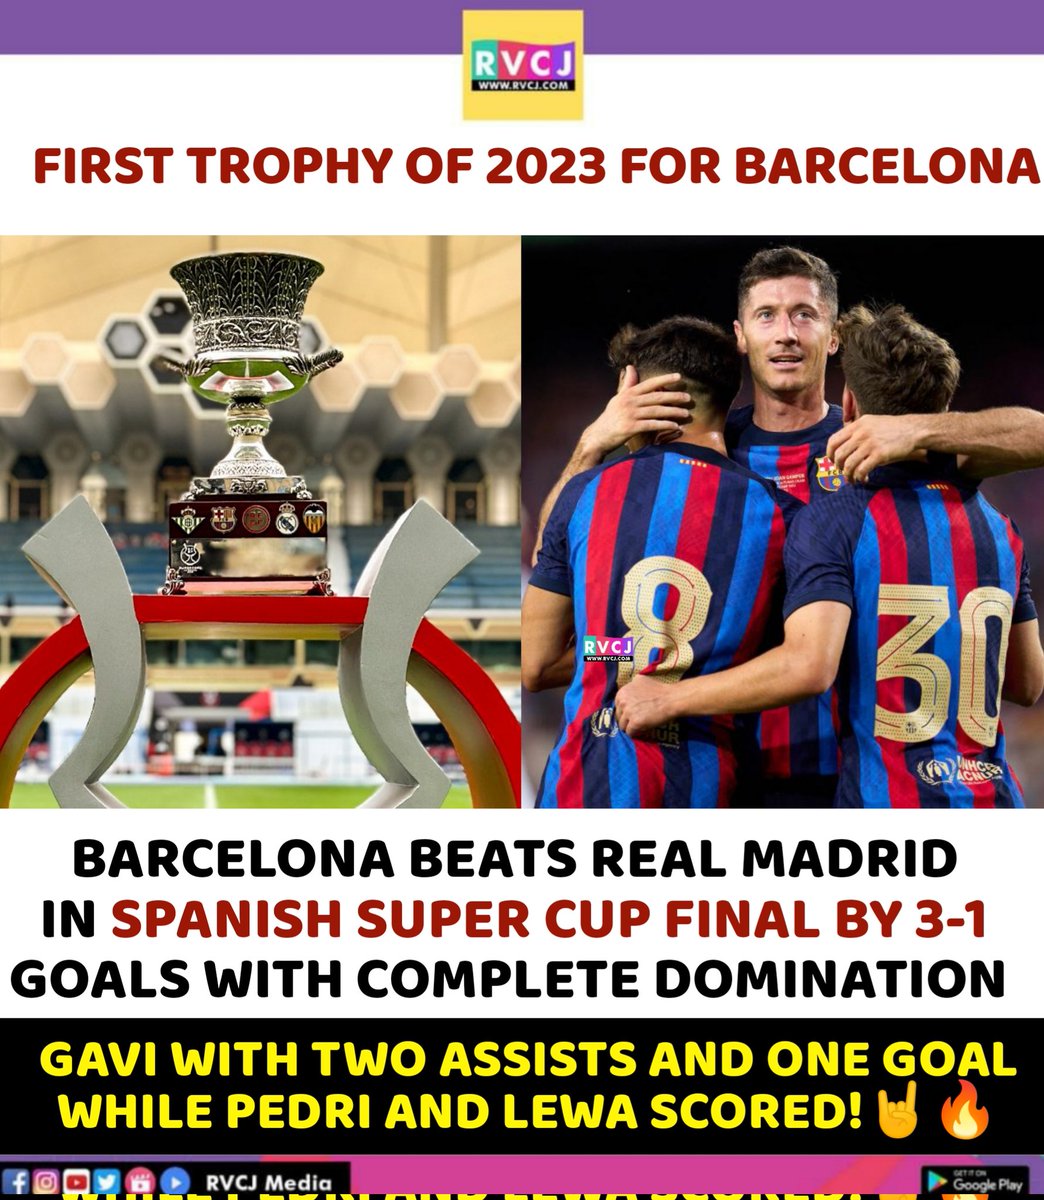 BARCELONA WON SPANISH SUPER CUP!

#Barcelona #barcareal #supercup #spanishsupercup #barcarealmadrid